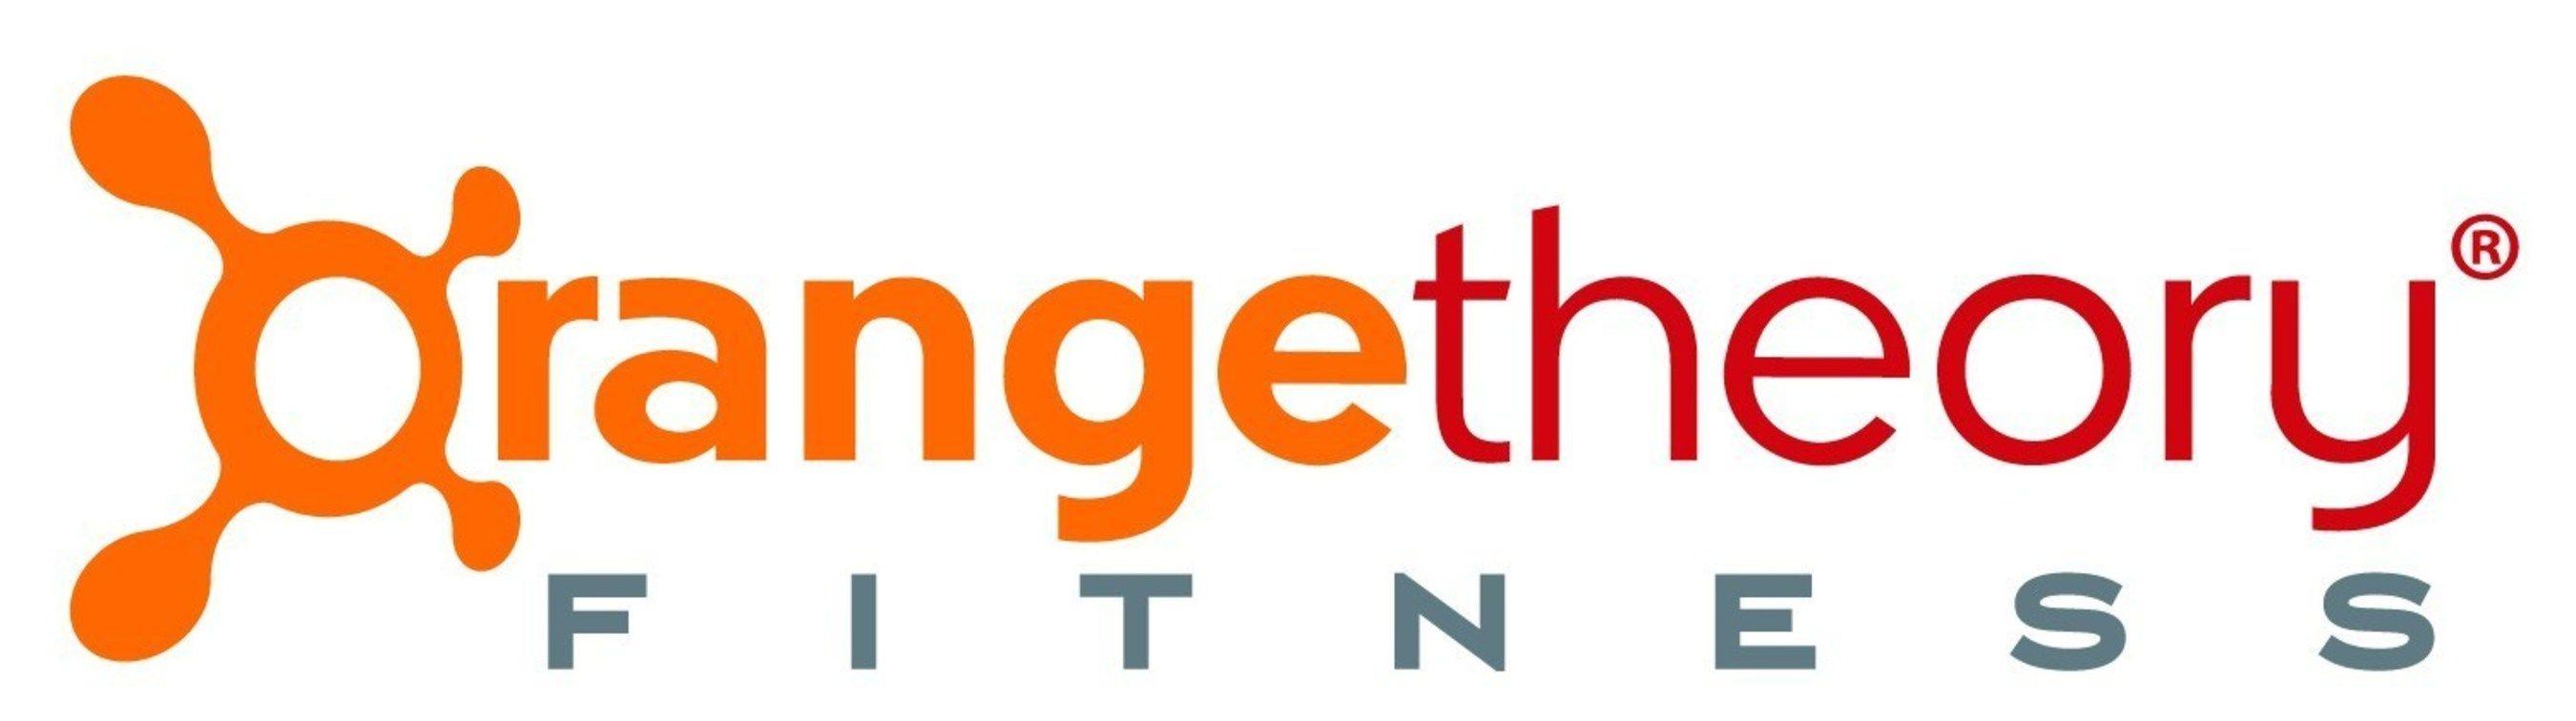 Orangetheory Logo - Orangetheory Fitness Logo | Autism Academy of South Carolina